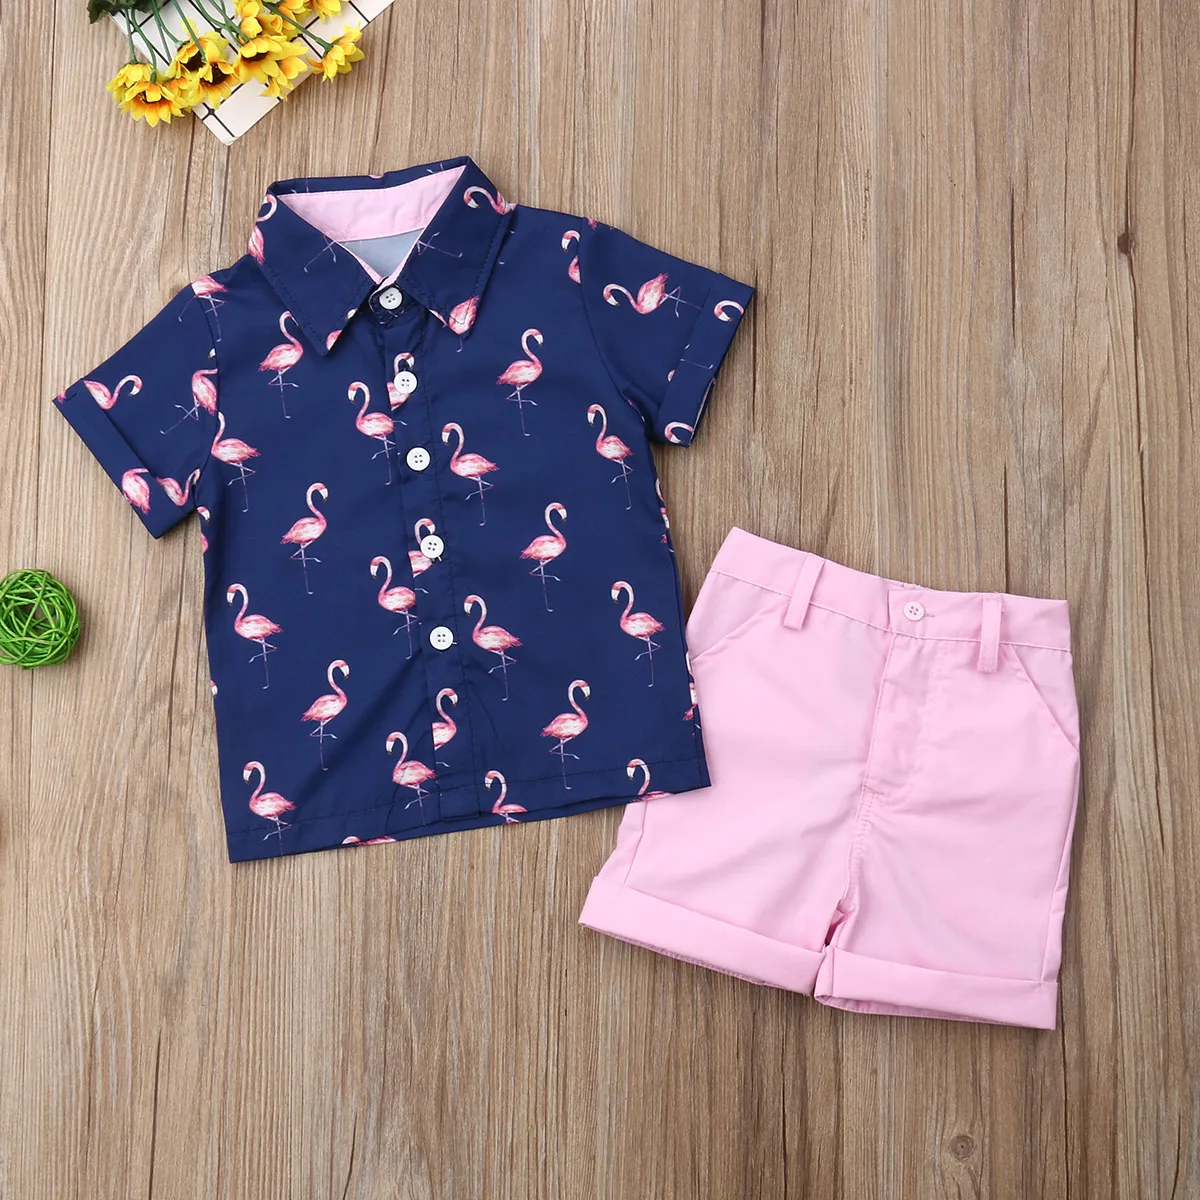 Комплект из 2 предметов, одежда для маленьких мальчиков топы с принтом фламинго, футболка розовые шорты штаны Одежда Лето, от 1 до 6 лет